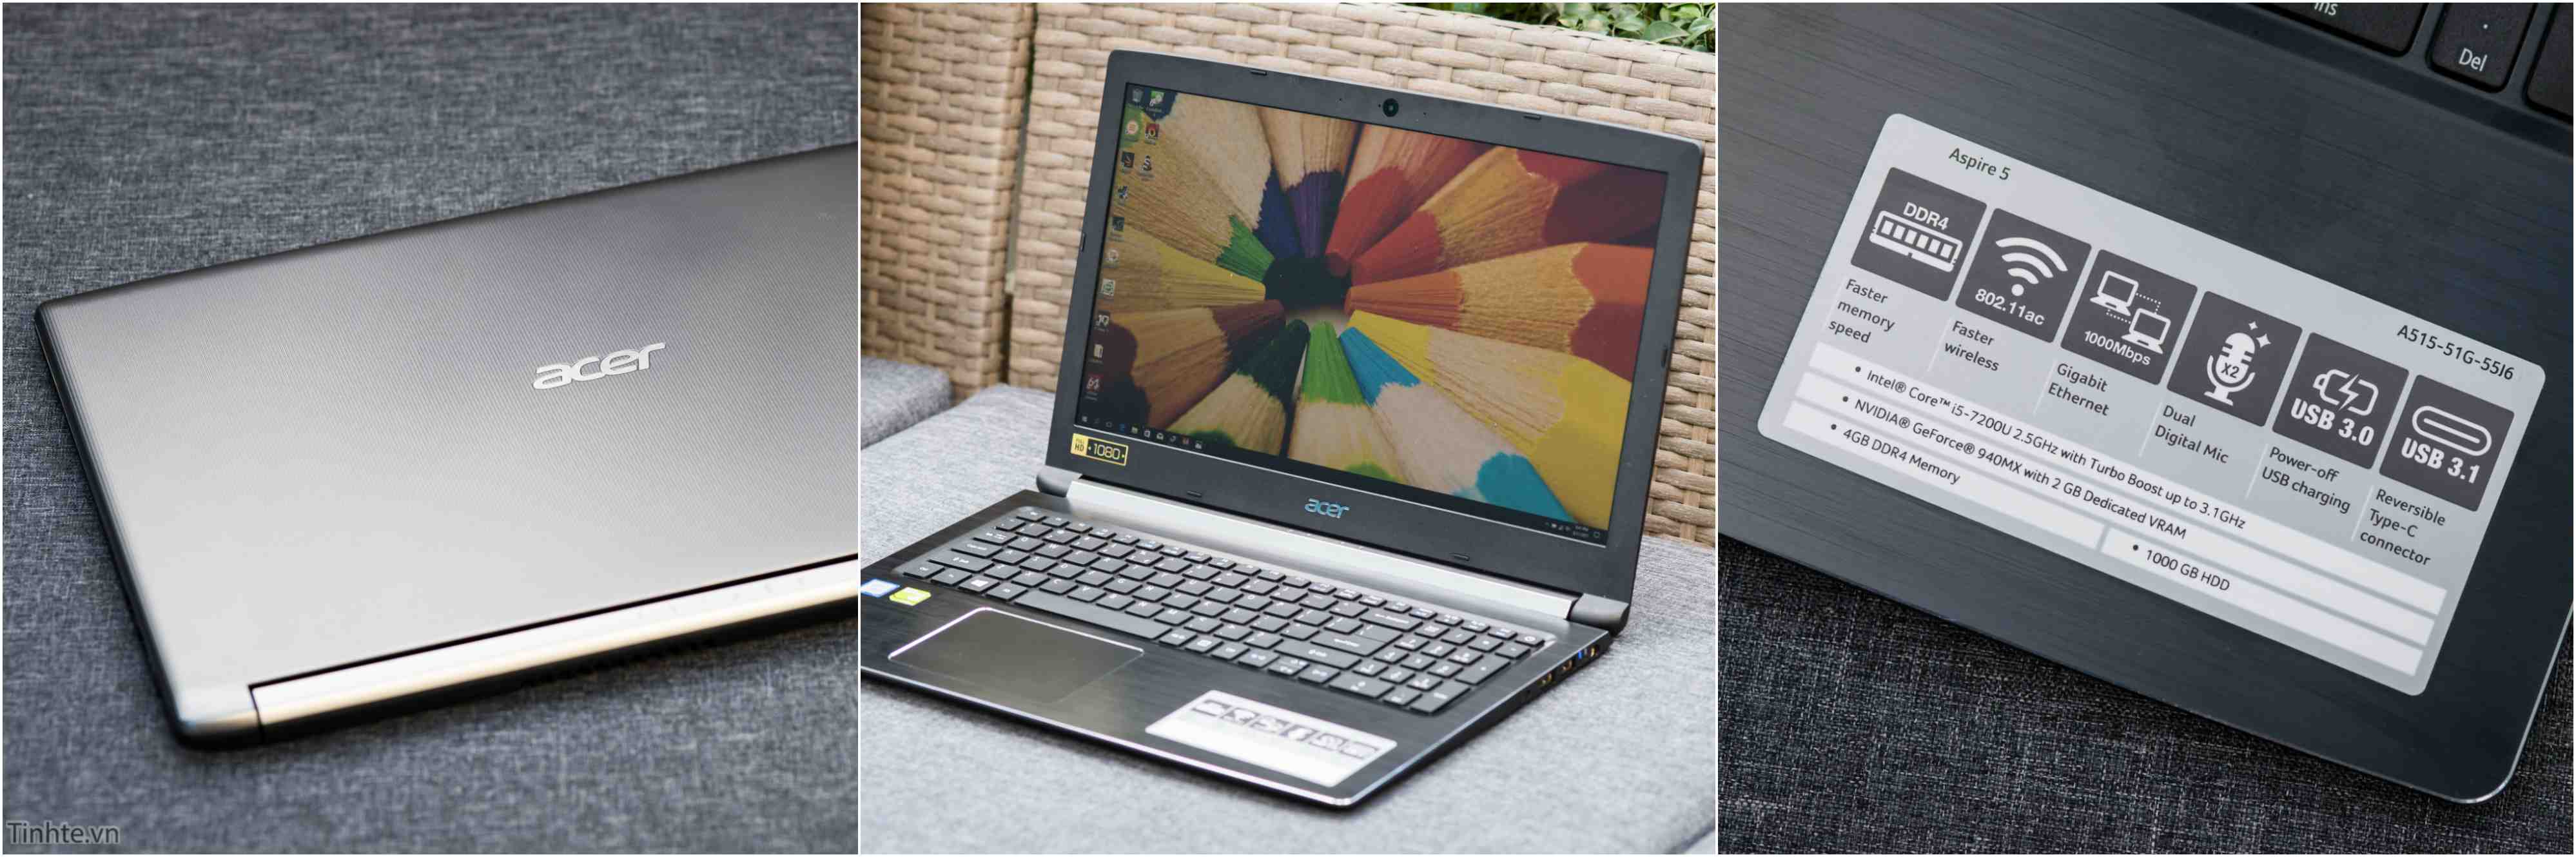 Đánh giá Acer Aspire 5: laptop sinh viên, thiết kế cổ điển, có GPU rời, giá 13,7 triệu